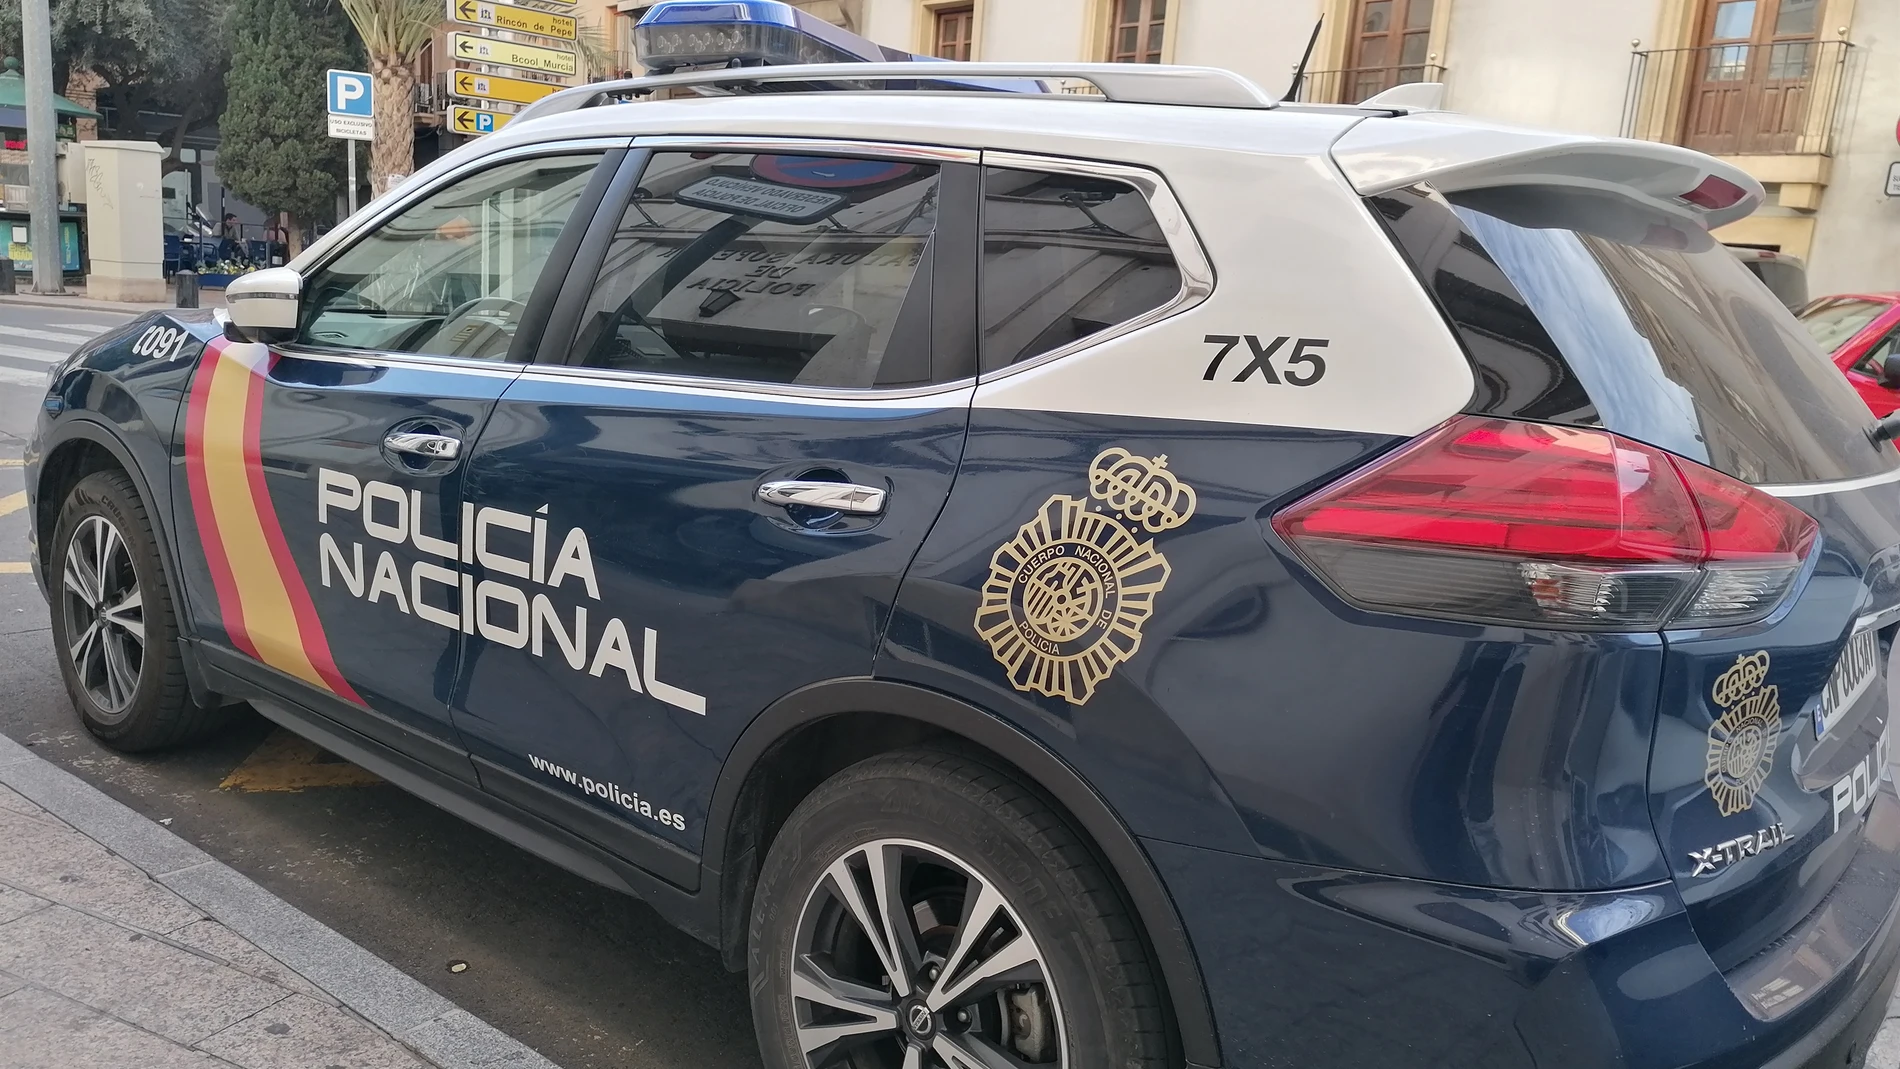 MURCIA.-Sucesos.- Detenido un varón por cuarta vez en el mismo mes tras robar en una perfumería de la Gran Vía de Murcia